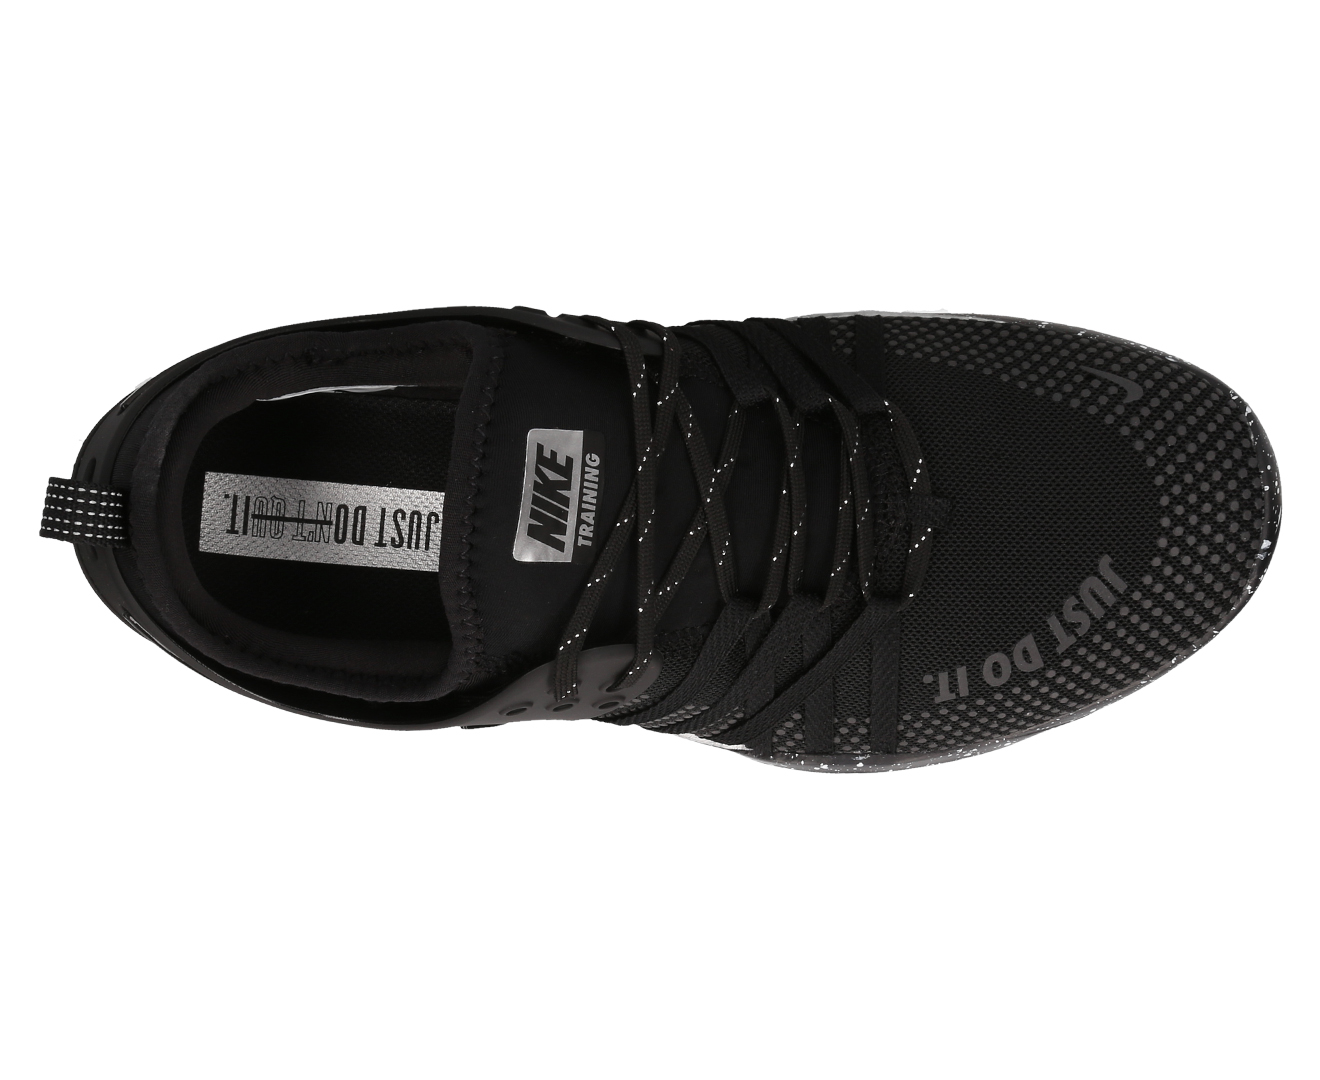 Nike Women's Free TR 7 Selfie Shoe - Black/Black-Chrome Catch.com.au